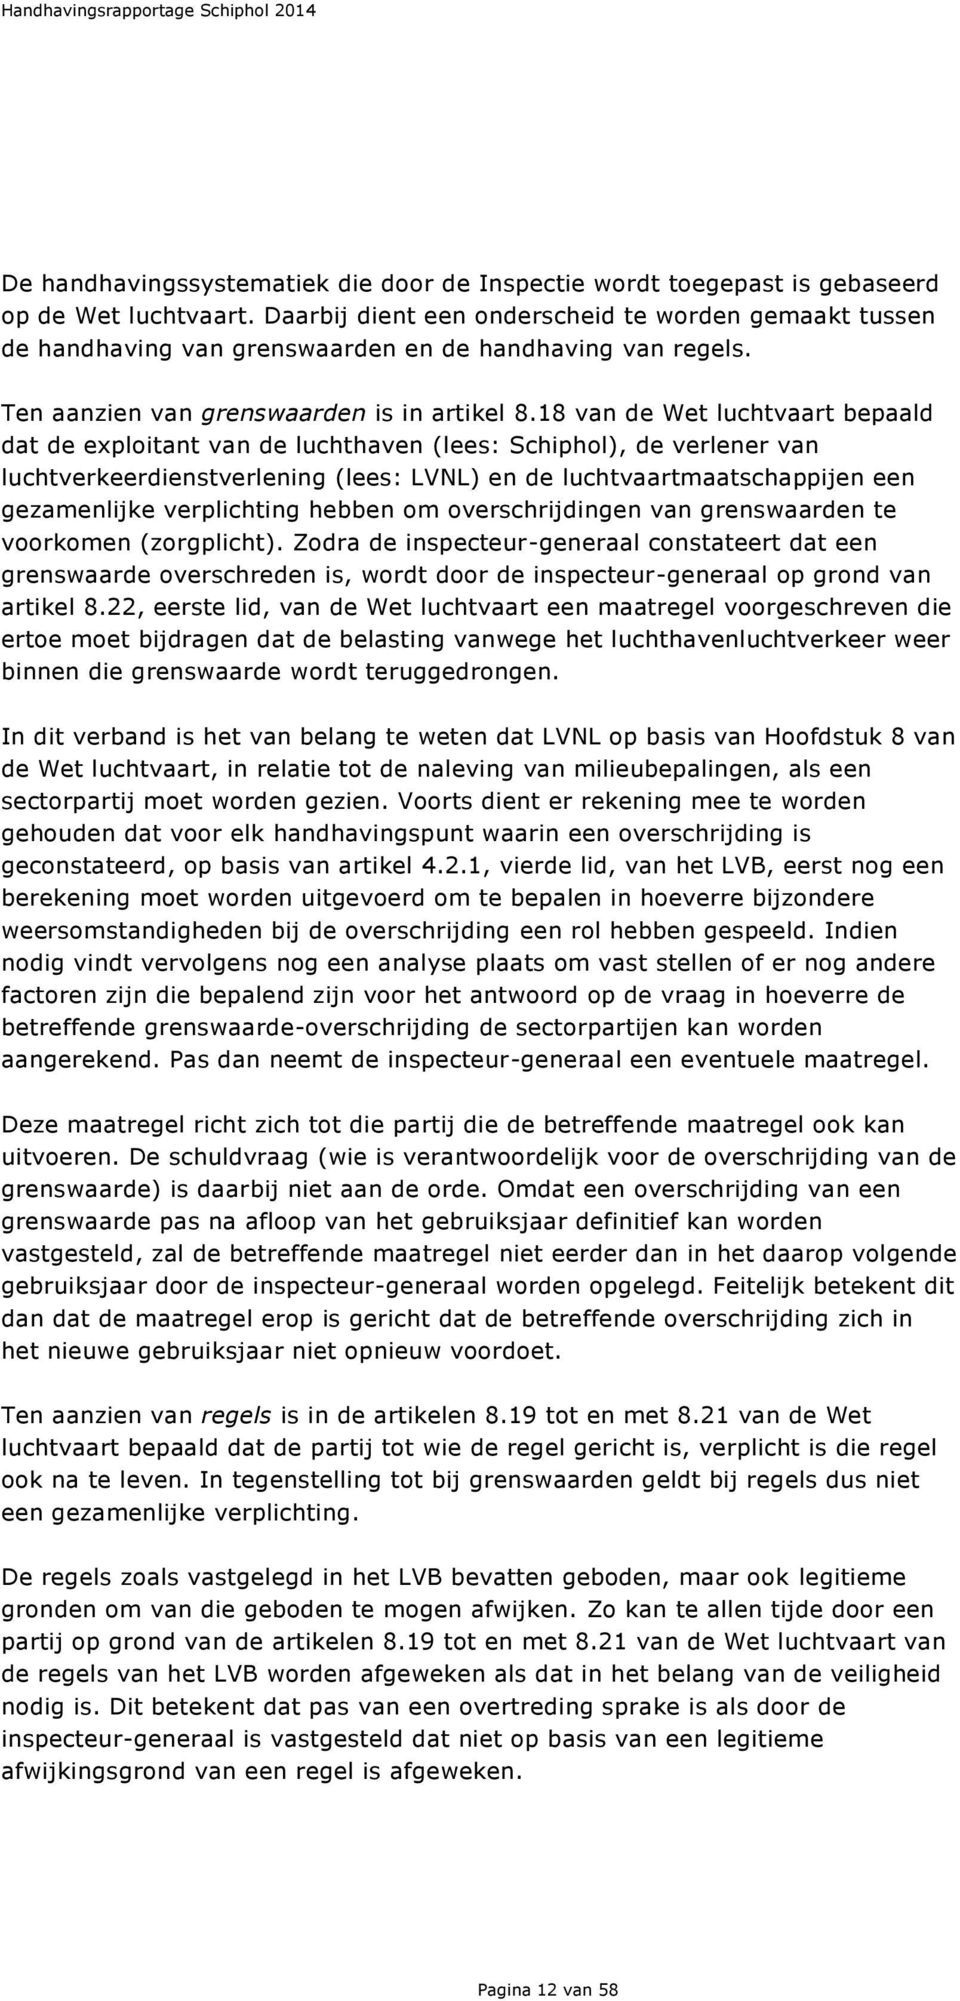 18 van de Wet luchtvaart bepaald dat de exploitant van de luchthaven (lees: Schiphol), de verlener van luchtverkeerdienstverlening (lees: LVNL) en de luchtvaartmaatschappijen een gezamenlijke